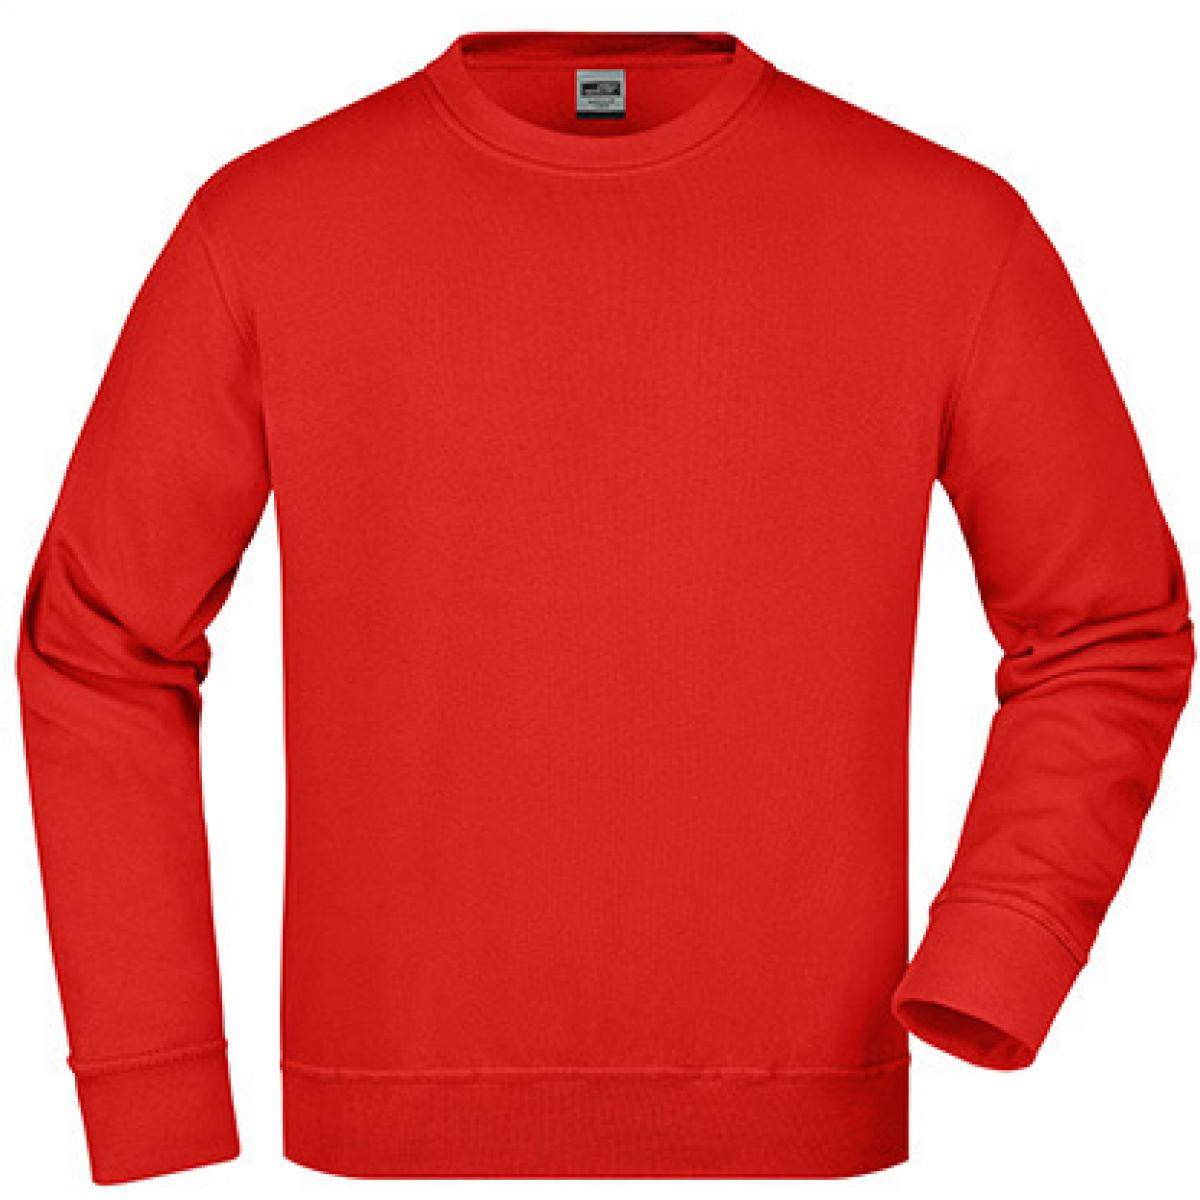 Hersteller: James+Nicholson Herstellernummer: JN840 Artikelbezeichnung: Workwear Sweatshirt / Waschbar bis 60C Farbe: Red